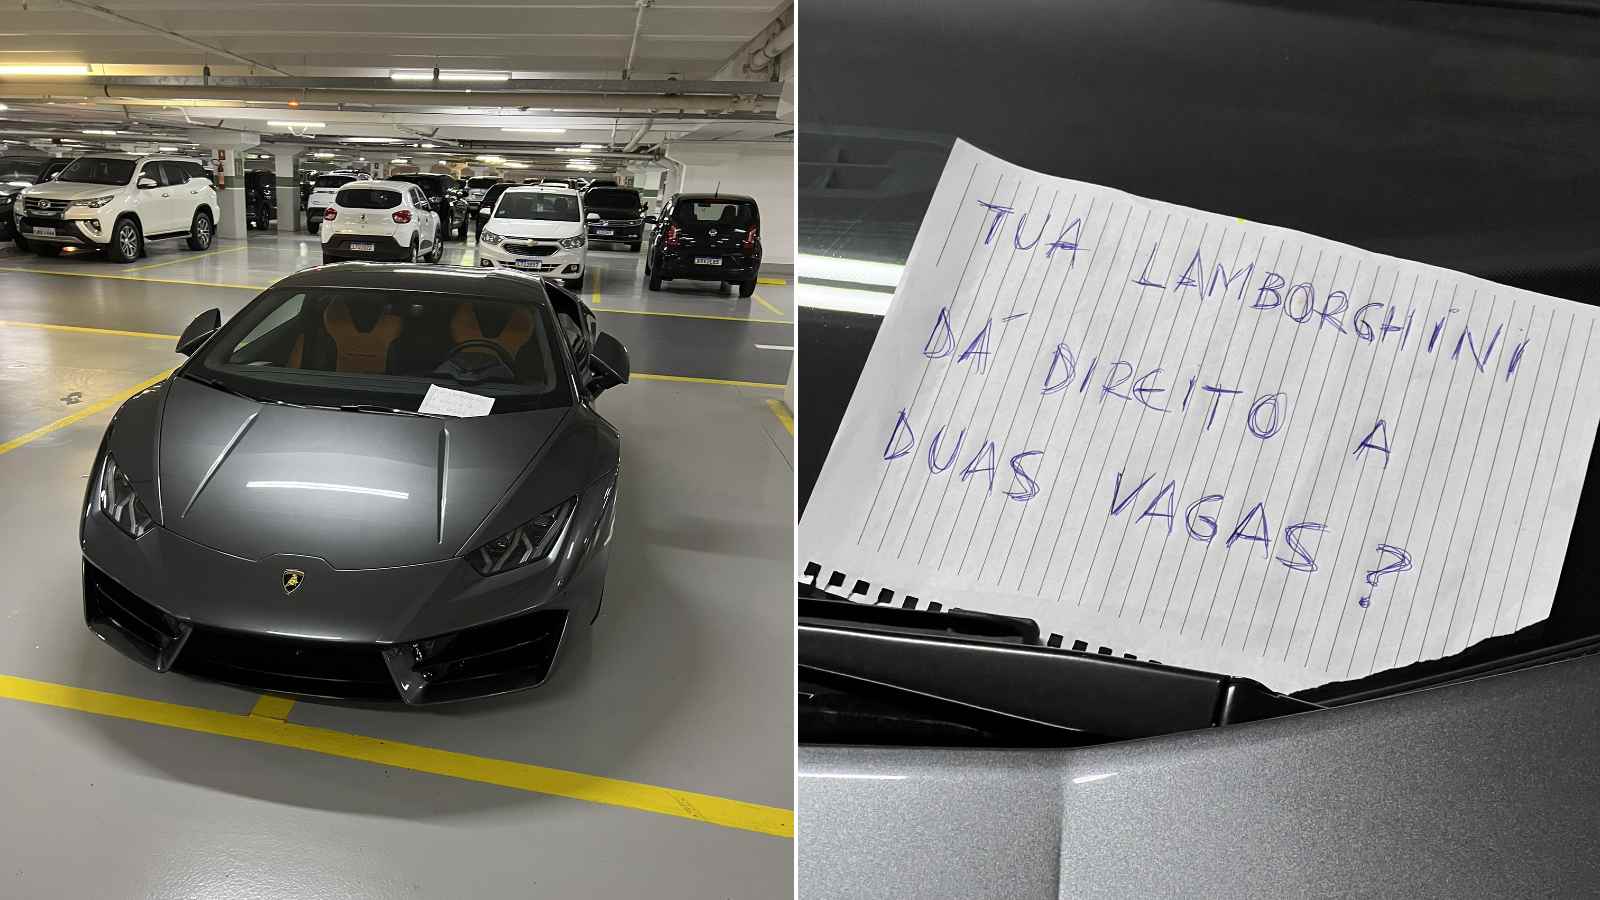 Novo carro da Lamborghini é tão potente que não deve circular em vias  públicas